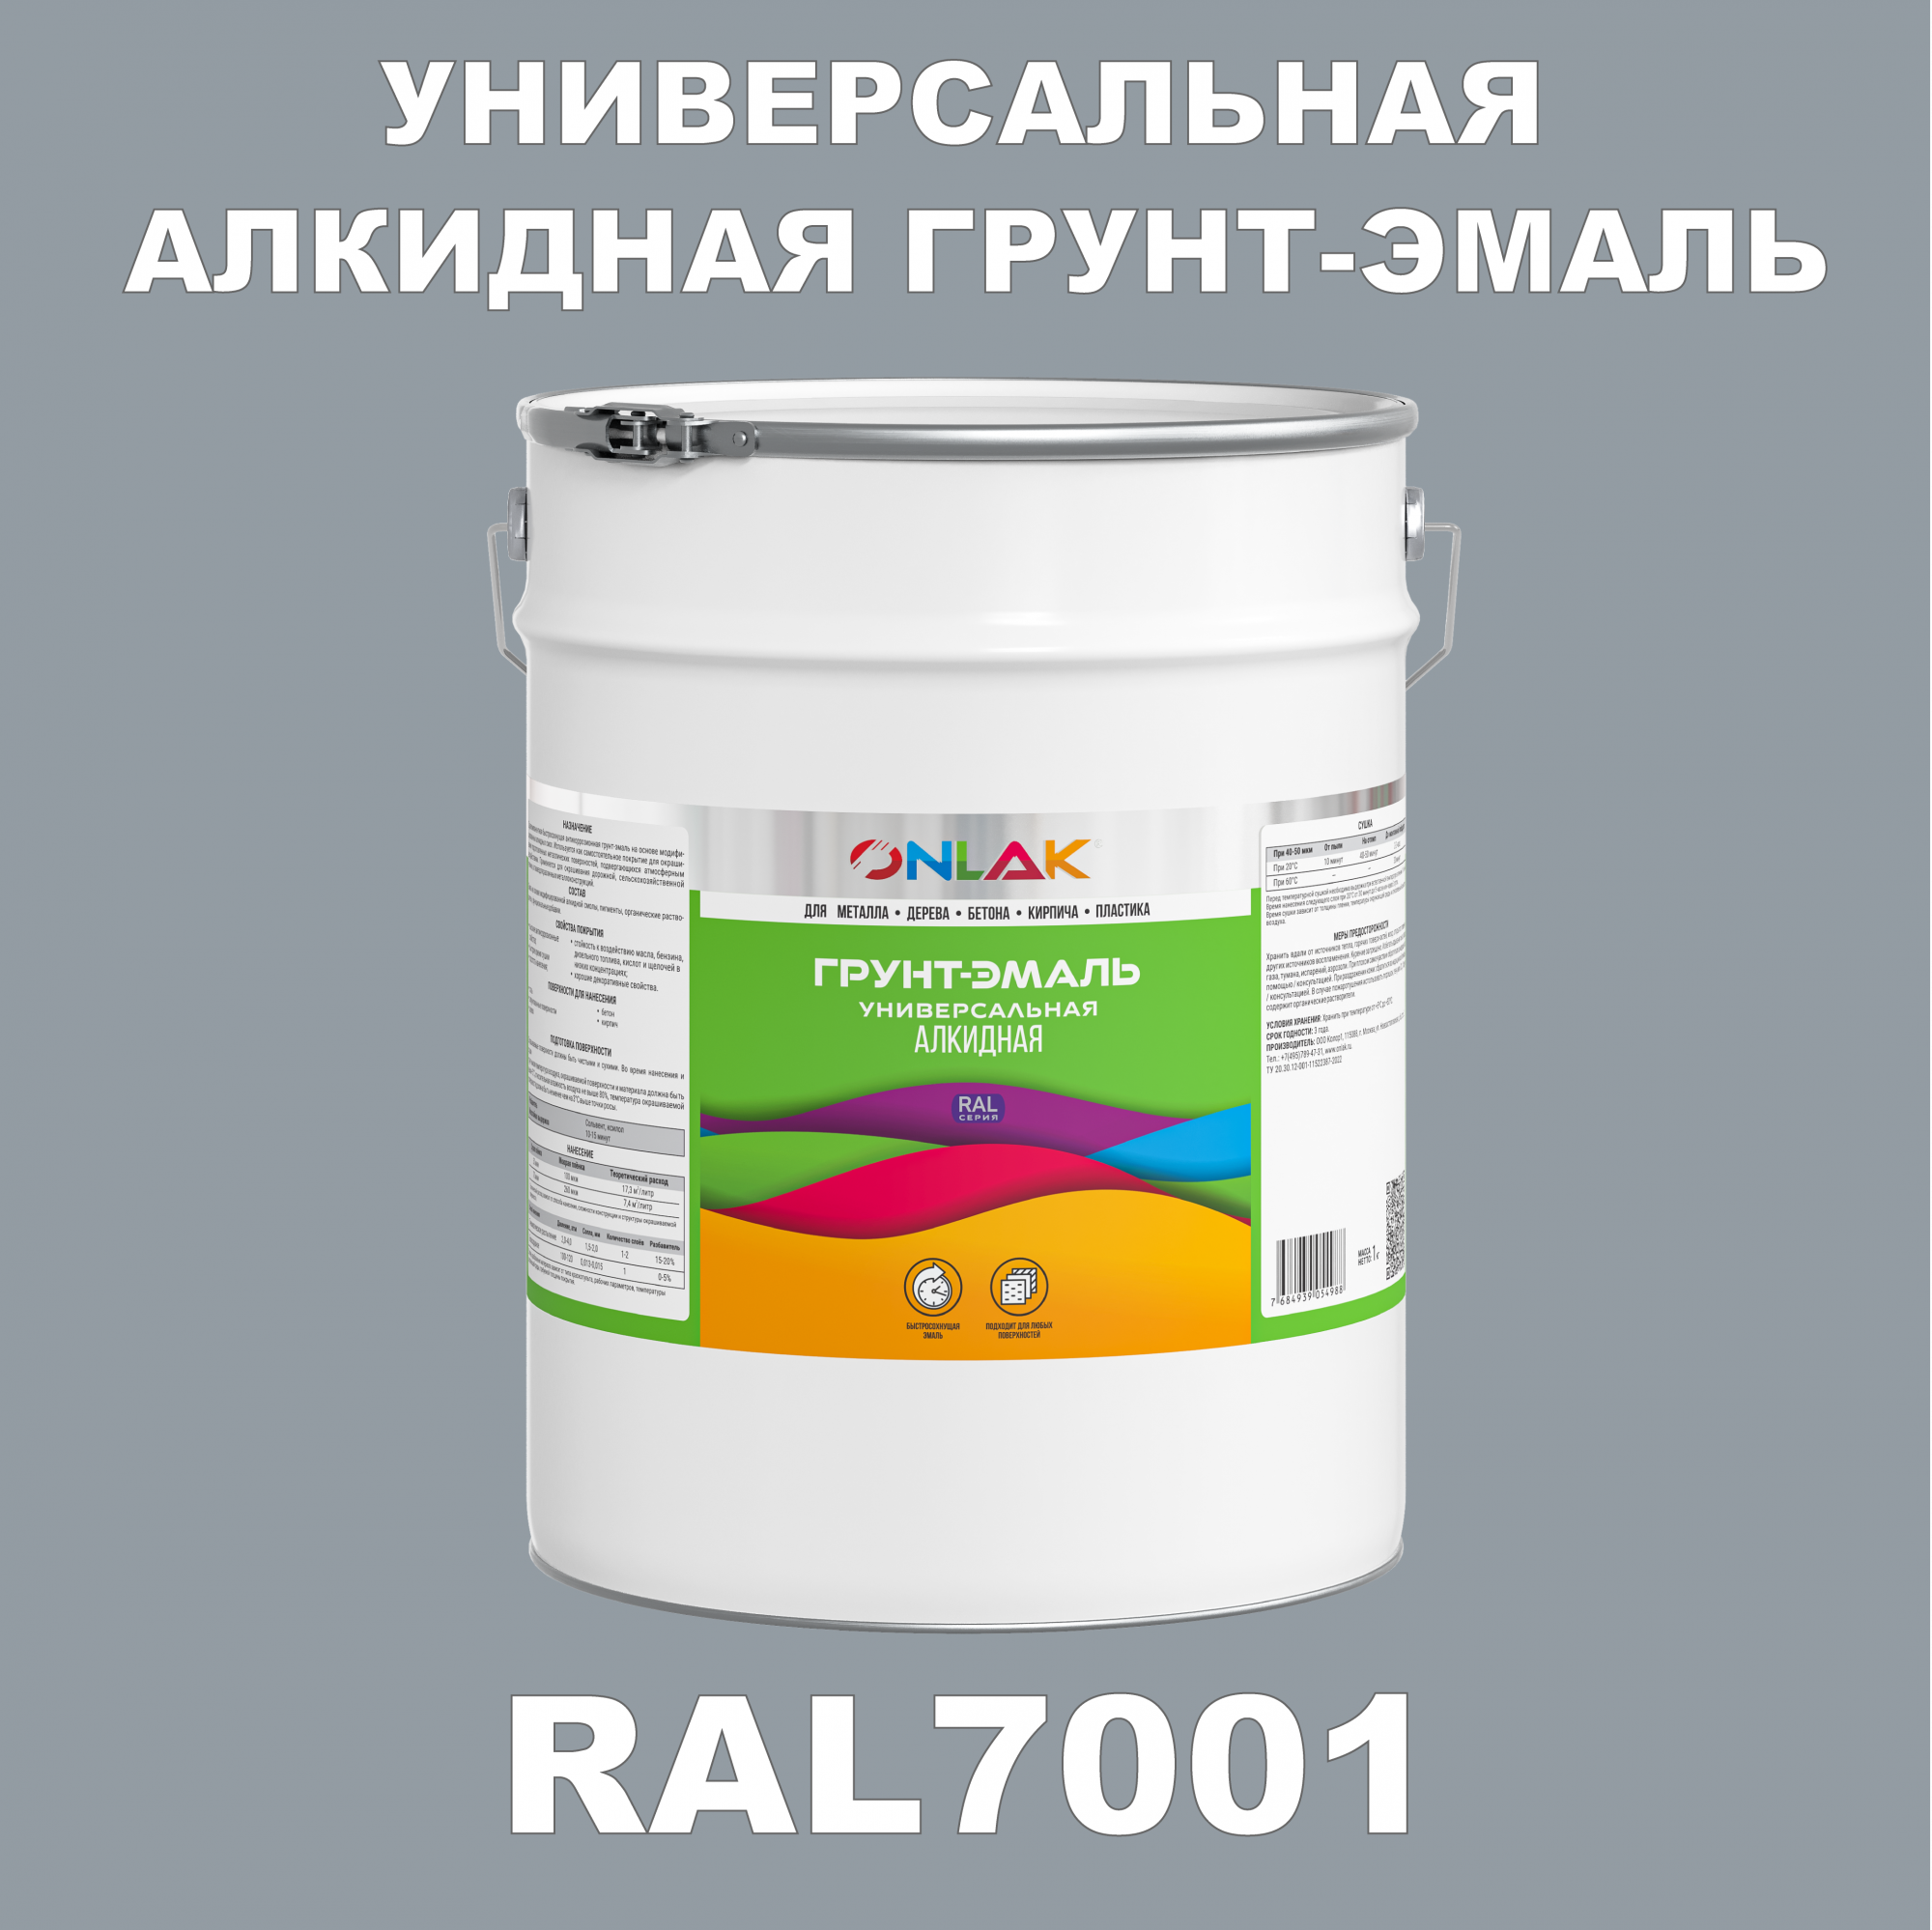 Грунт-эмаль ONLAK 1К RAL7001 антикоррозионная алкидная по металлу по ржавчине 20 кг грунт эмаль yollo по ржавчине алкидная синяя 0 9 кг